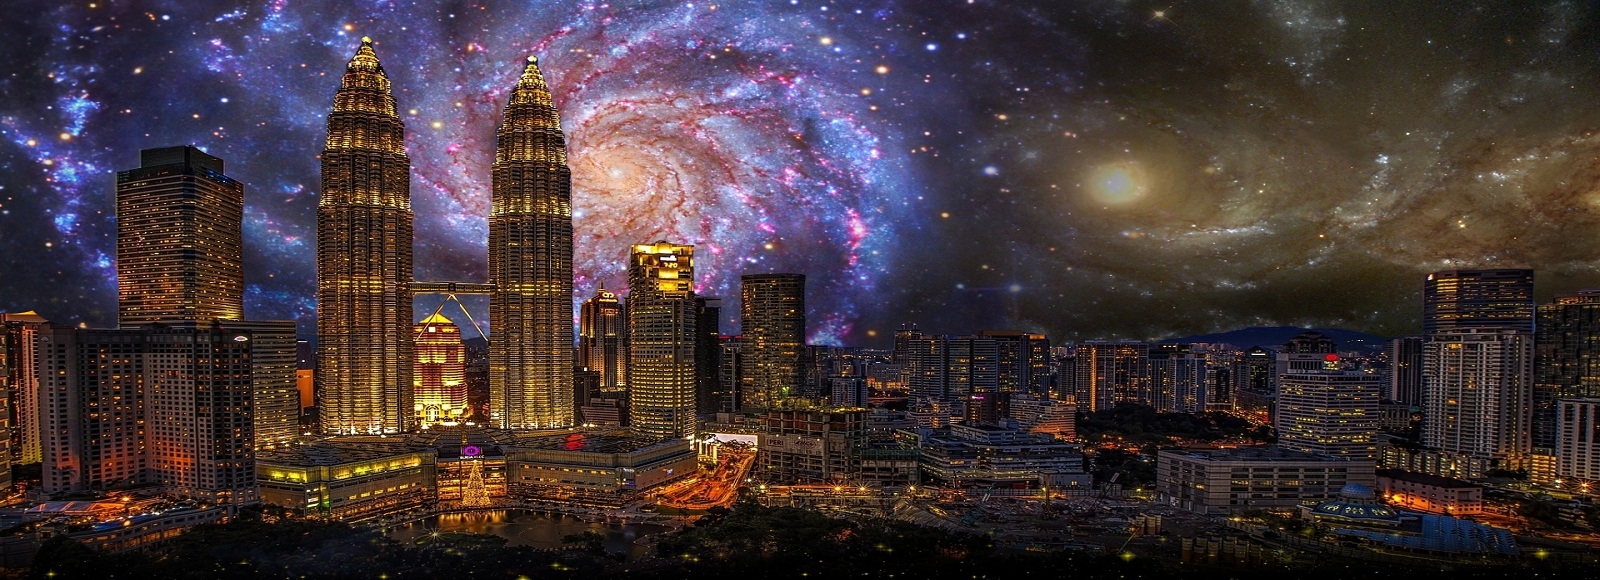 Ofertas de Traslados en Kuala Lumpur. Traslados económicos en Kuala Lumpur 